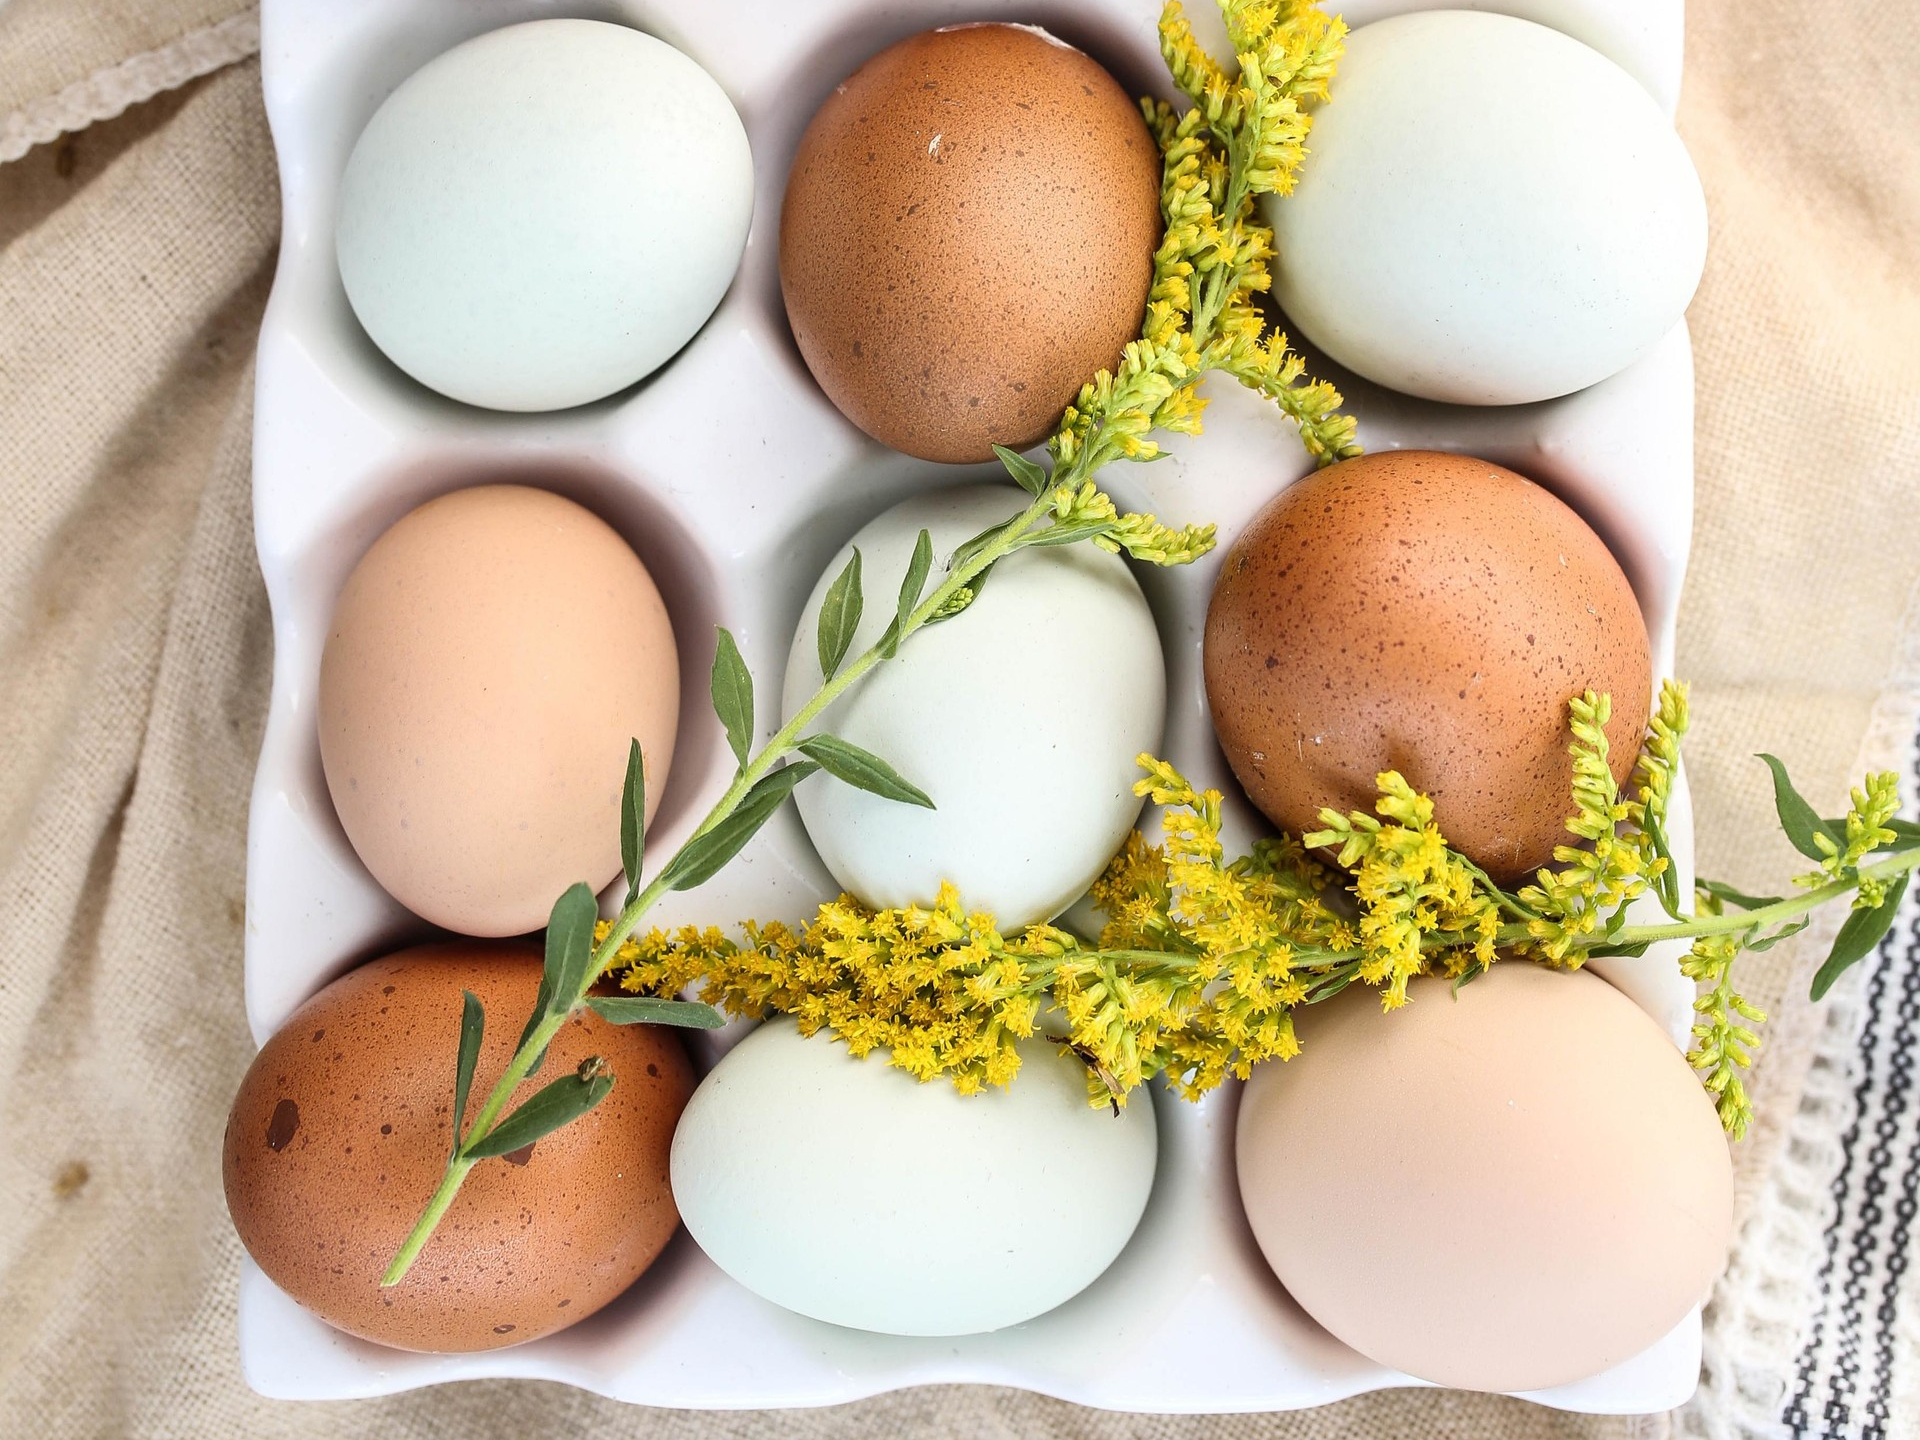 Какие яйца полезнее есть: яйца вкрутую или всмятку